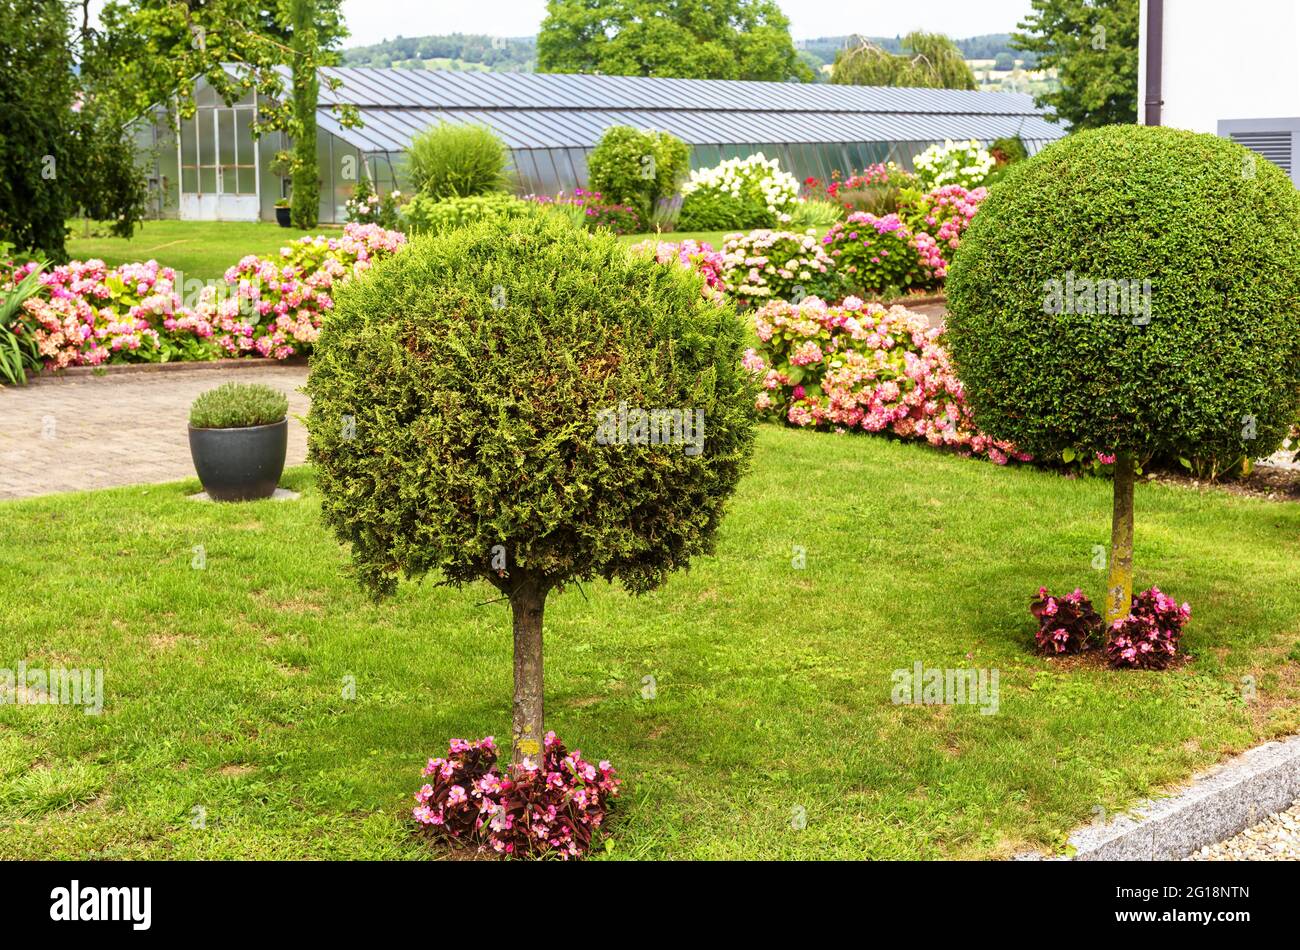 Aménagement paysager avec plantes, fleurs et topiaire à la maison résidentielle à l'île de Reichenau, Allemagne. Beau jardin de maison paysagé près du lac Constance. Banque D'Images